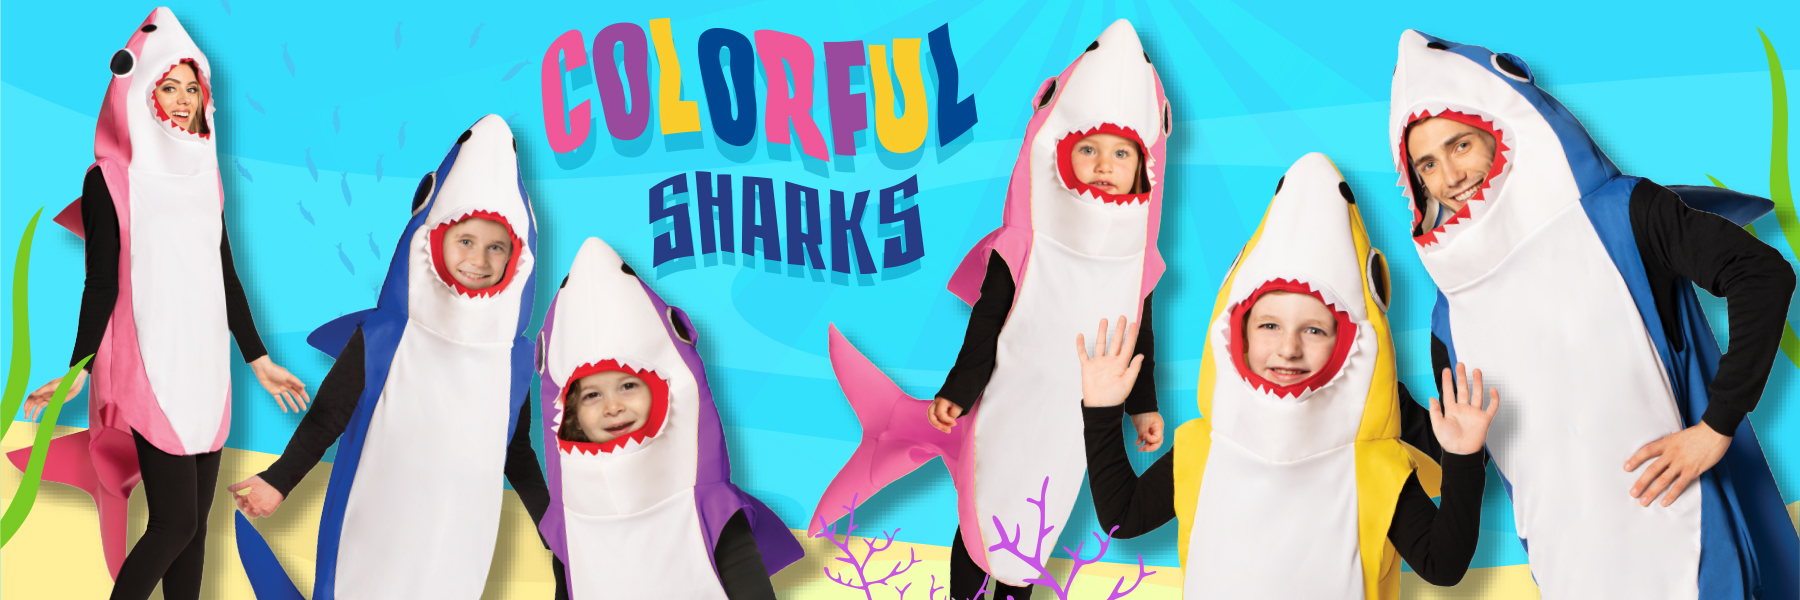 baby shark costumes